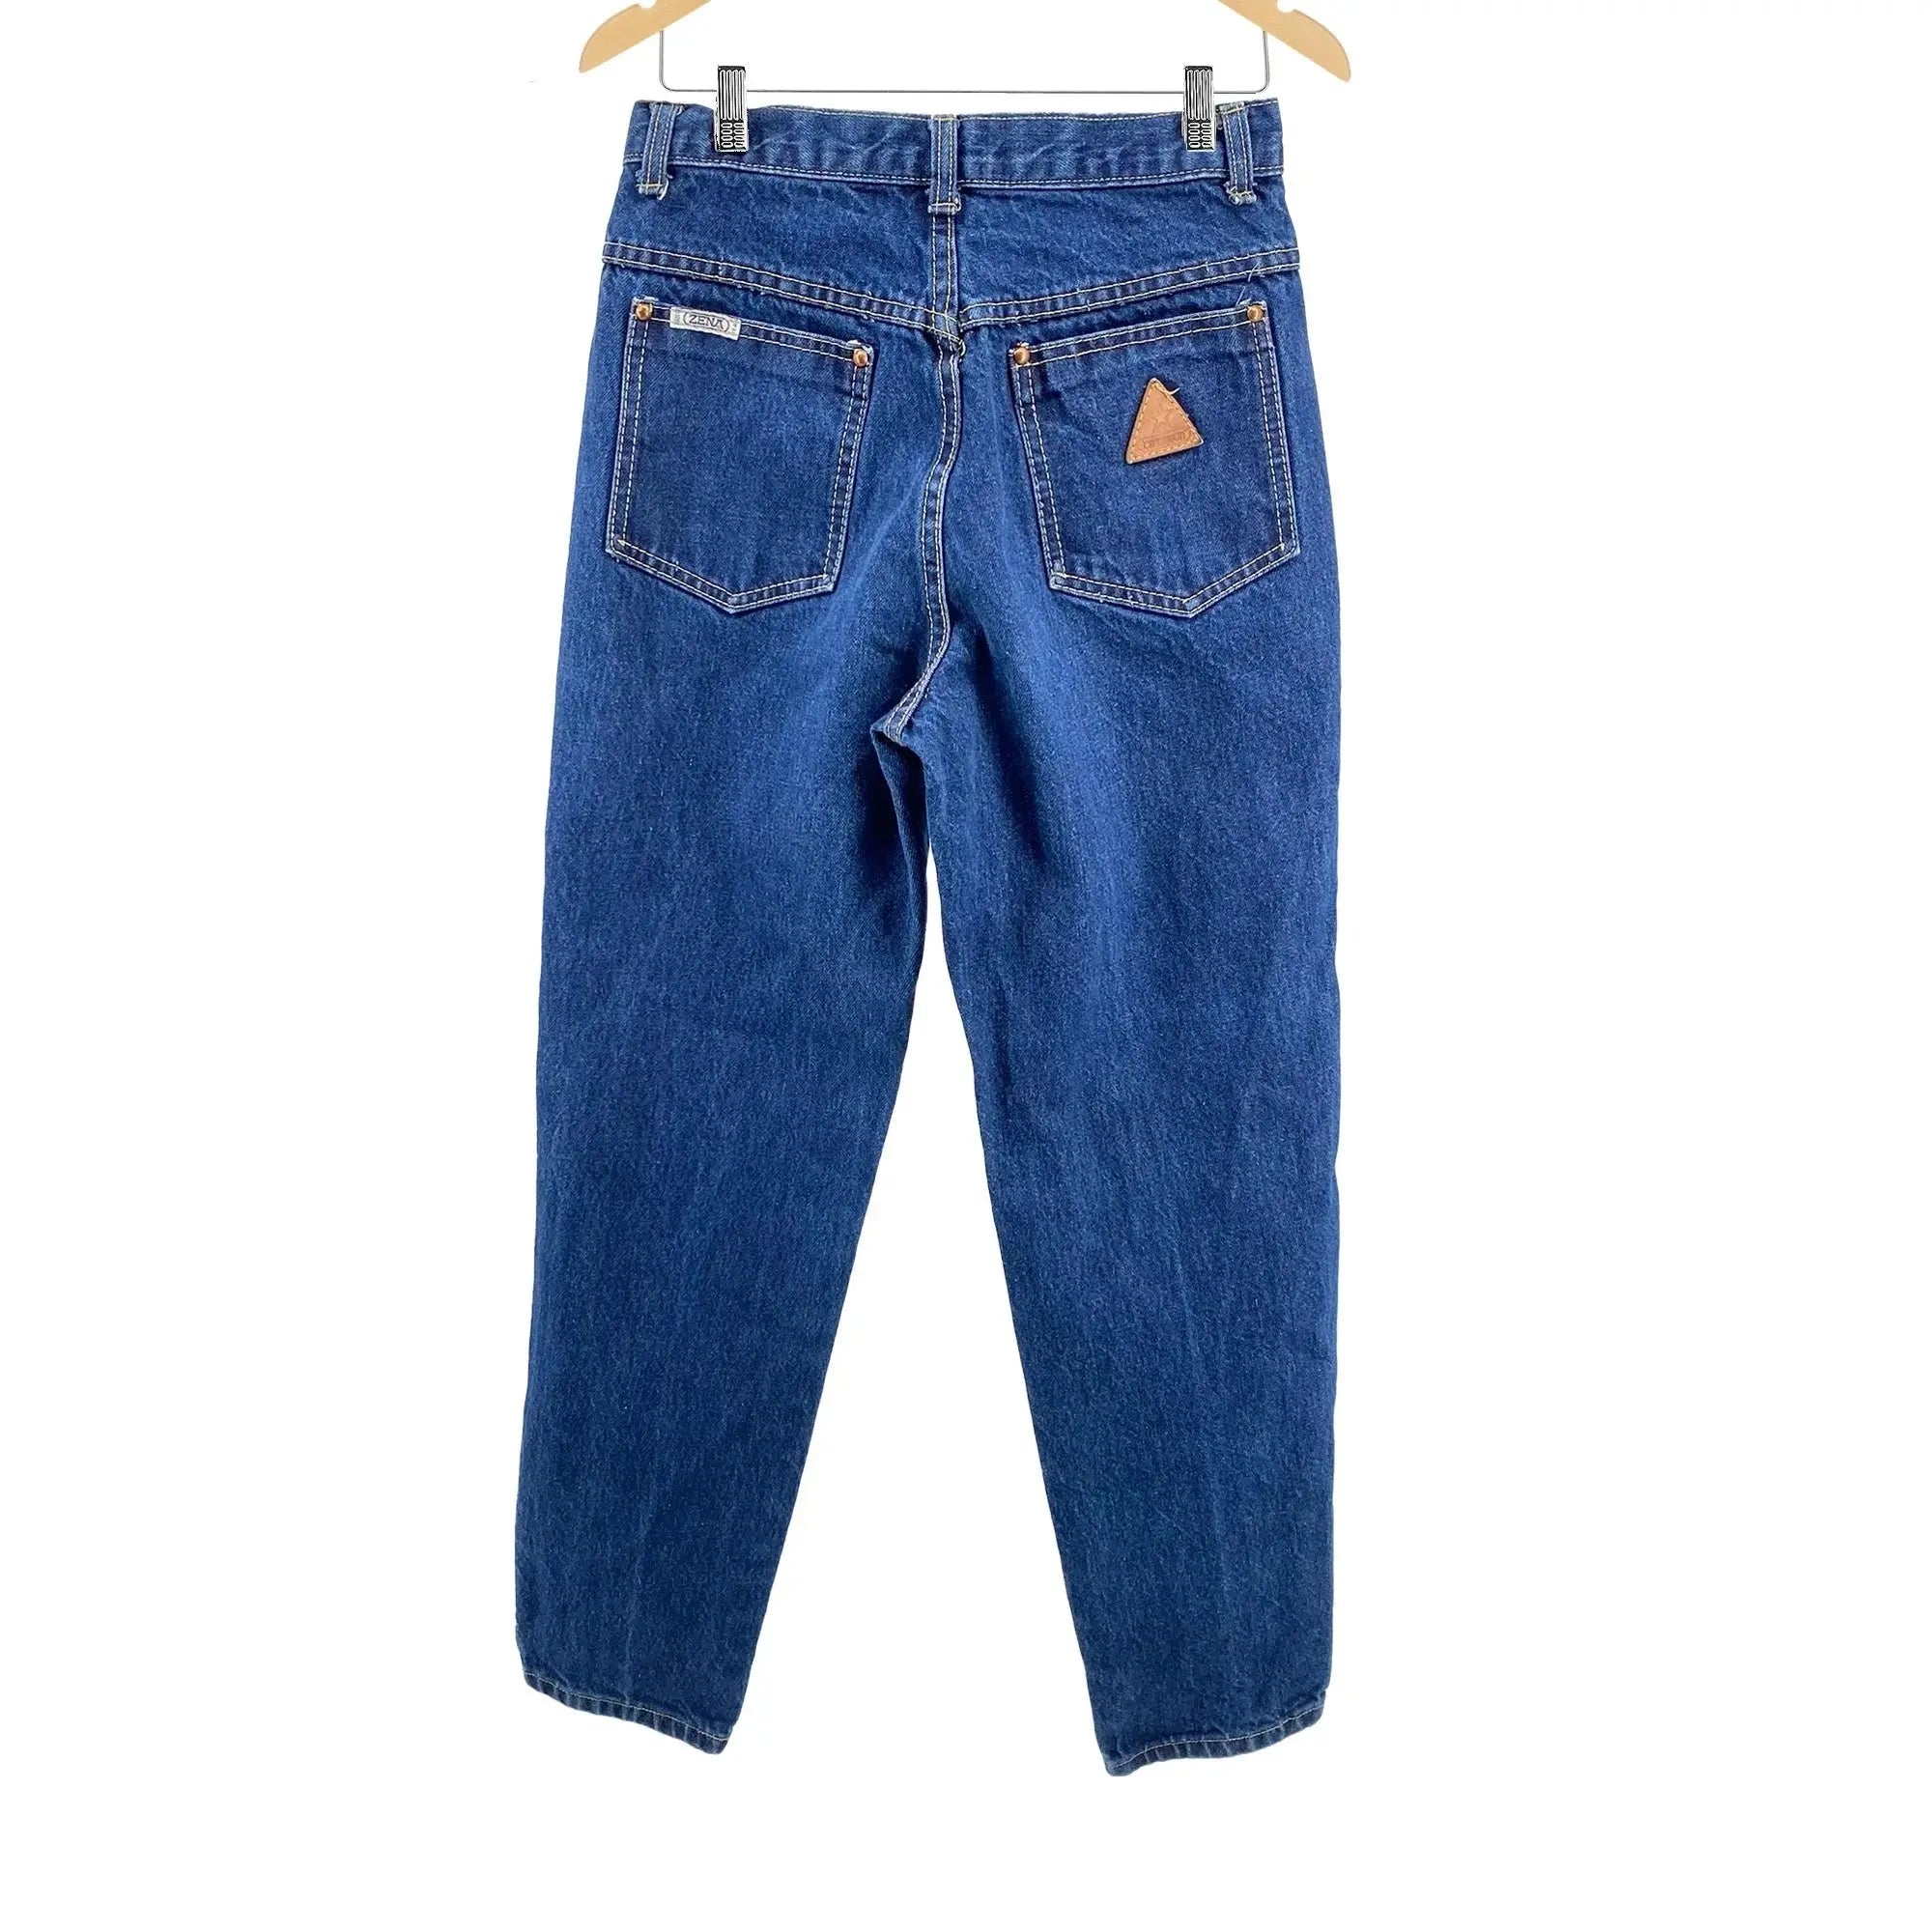 Vintage 80s Zena Comfort Jeans - Women's/Junior's 9 Great Lakes Reclaimed Denim